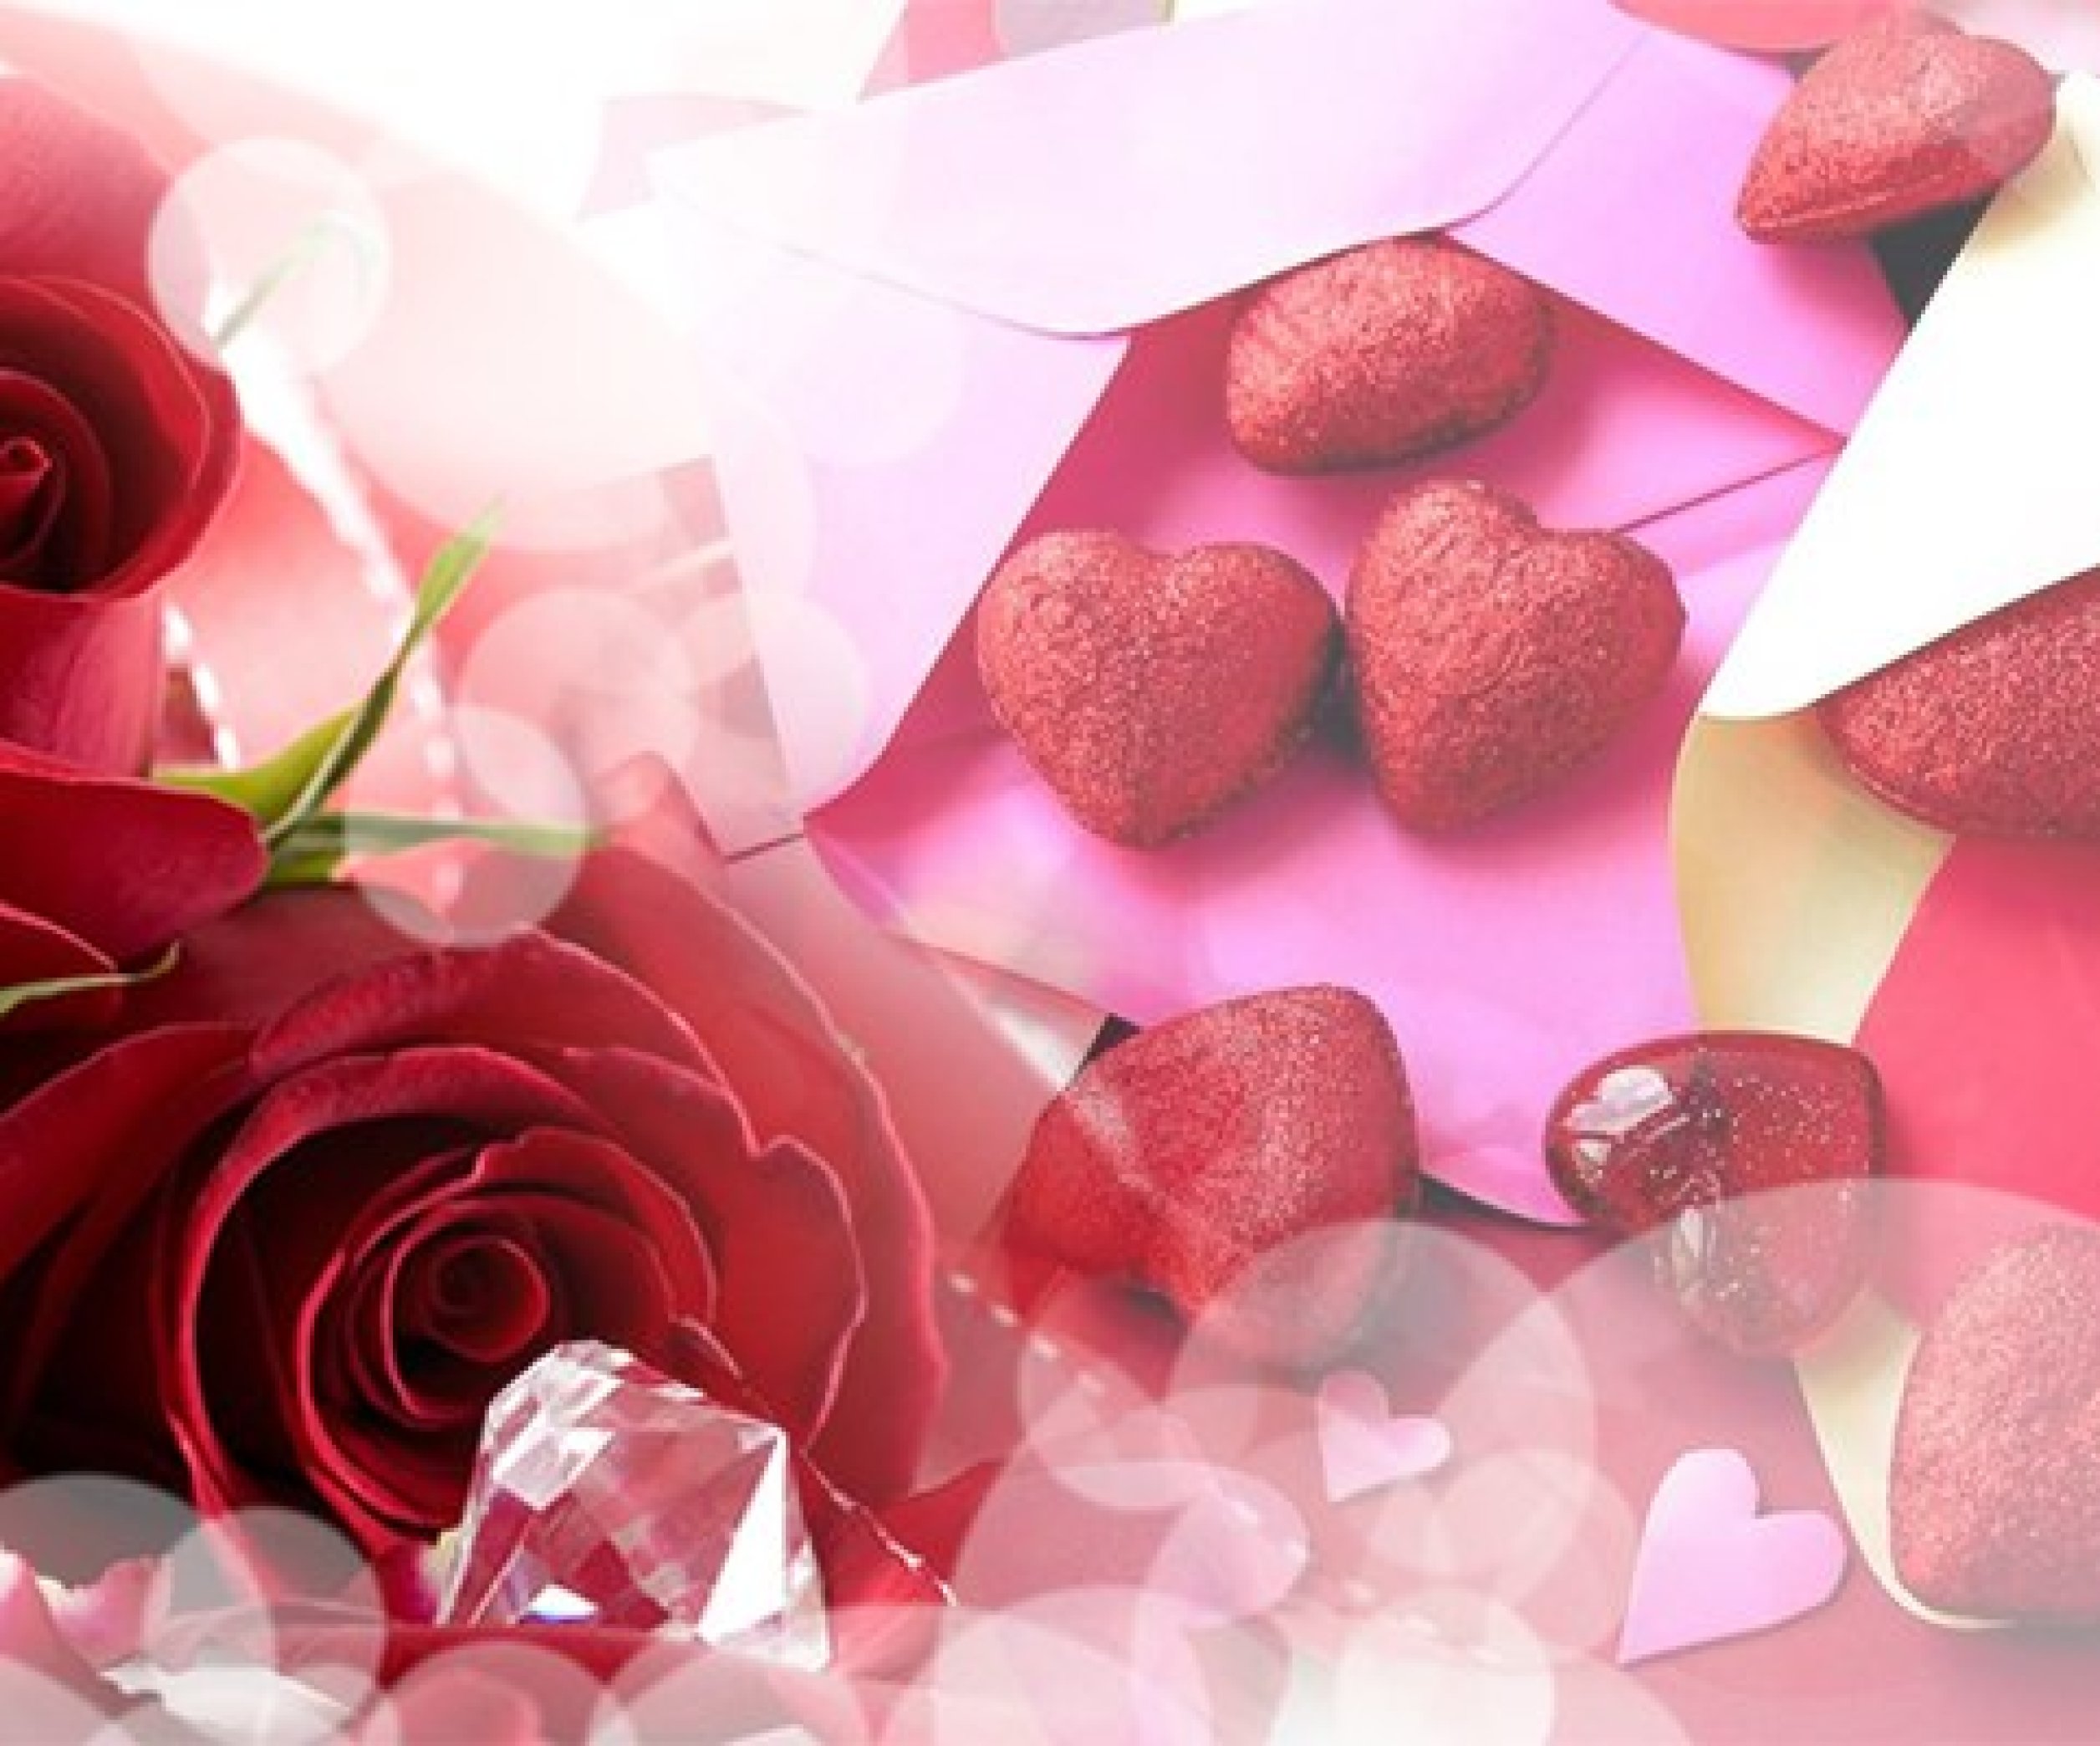 Подарки на День Святого Валентина к 14 февраля